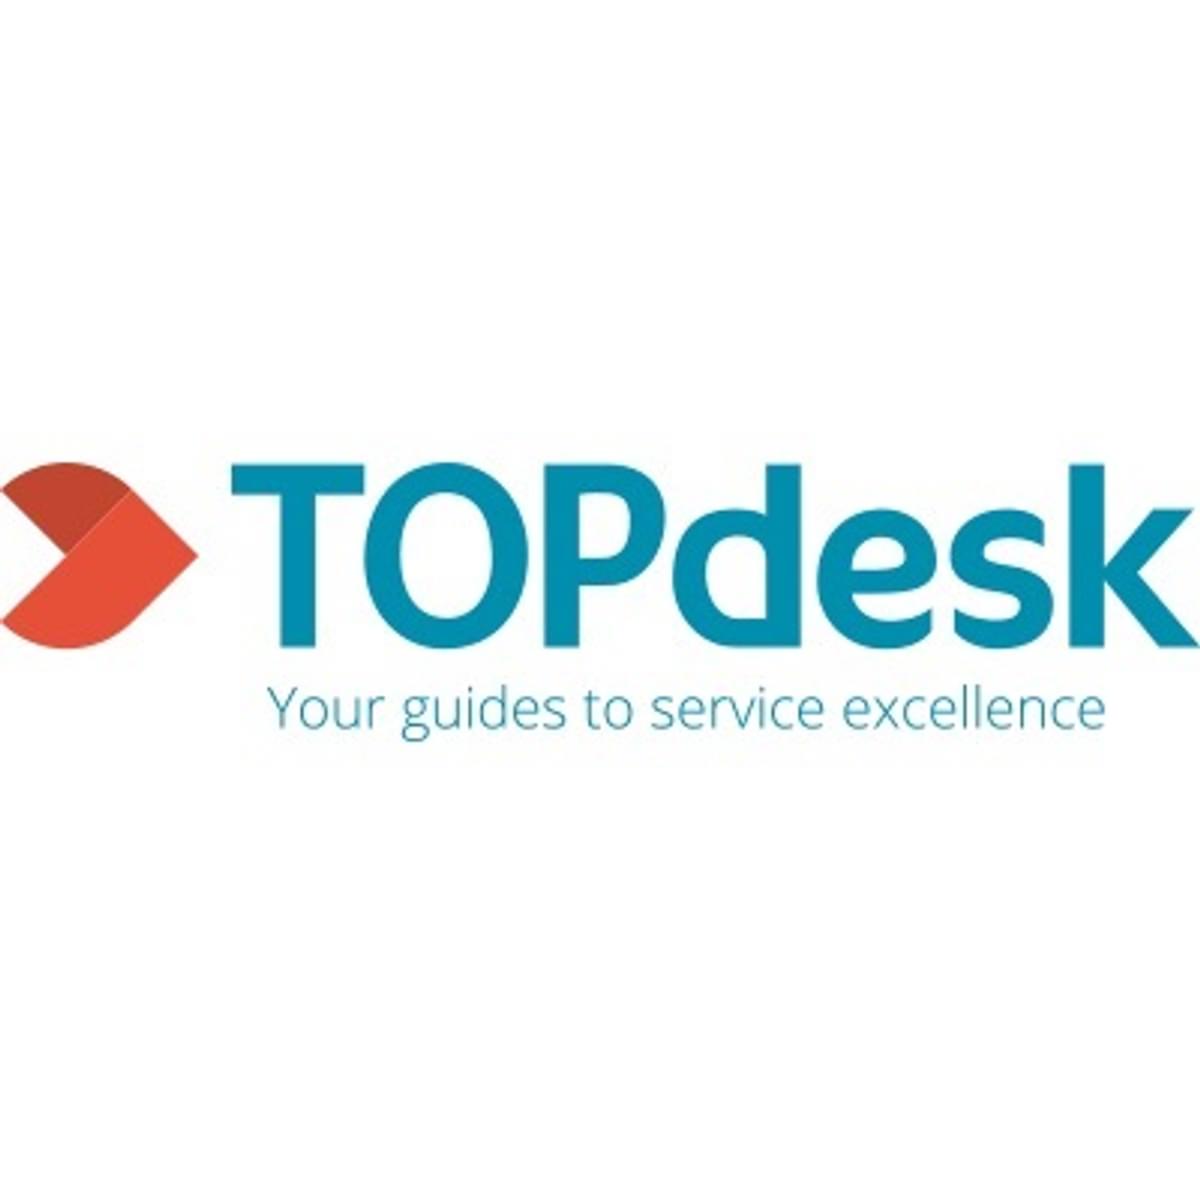 TOPdesk presenteert nieuwe huisstijl image